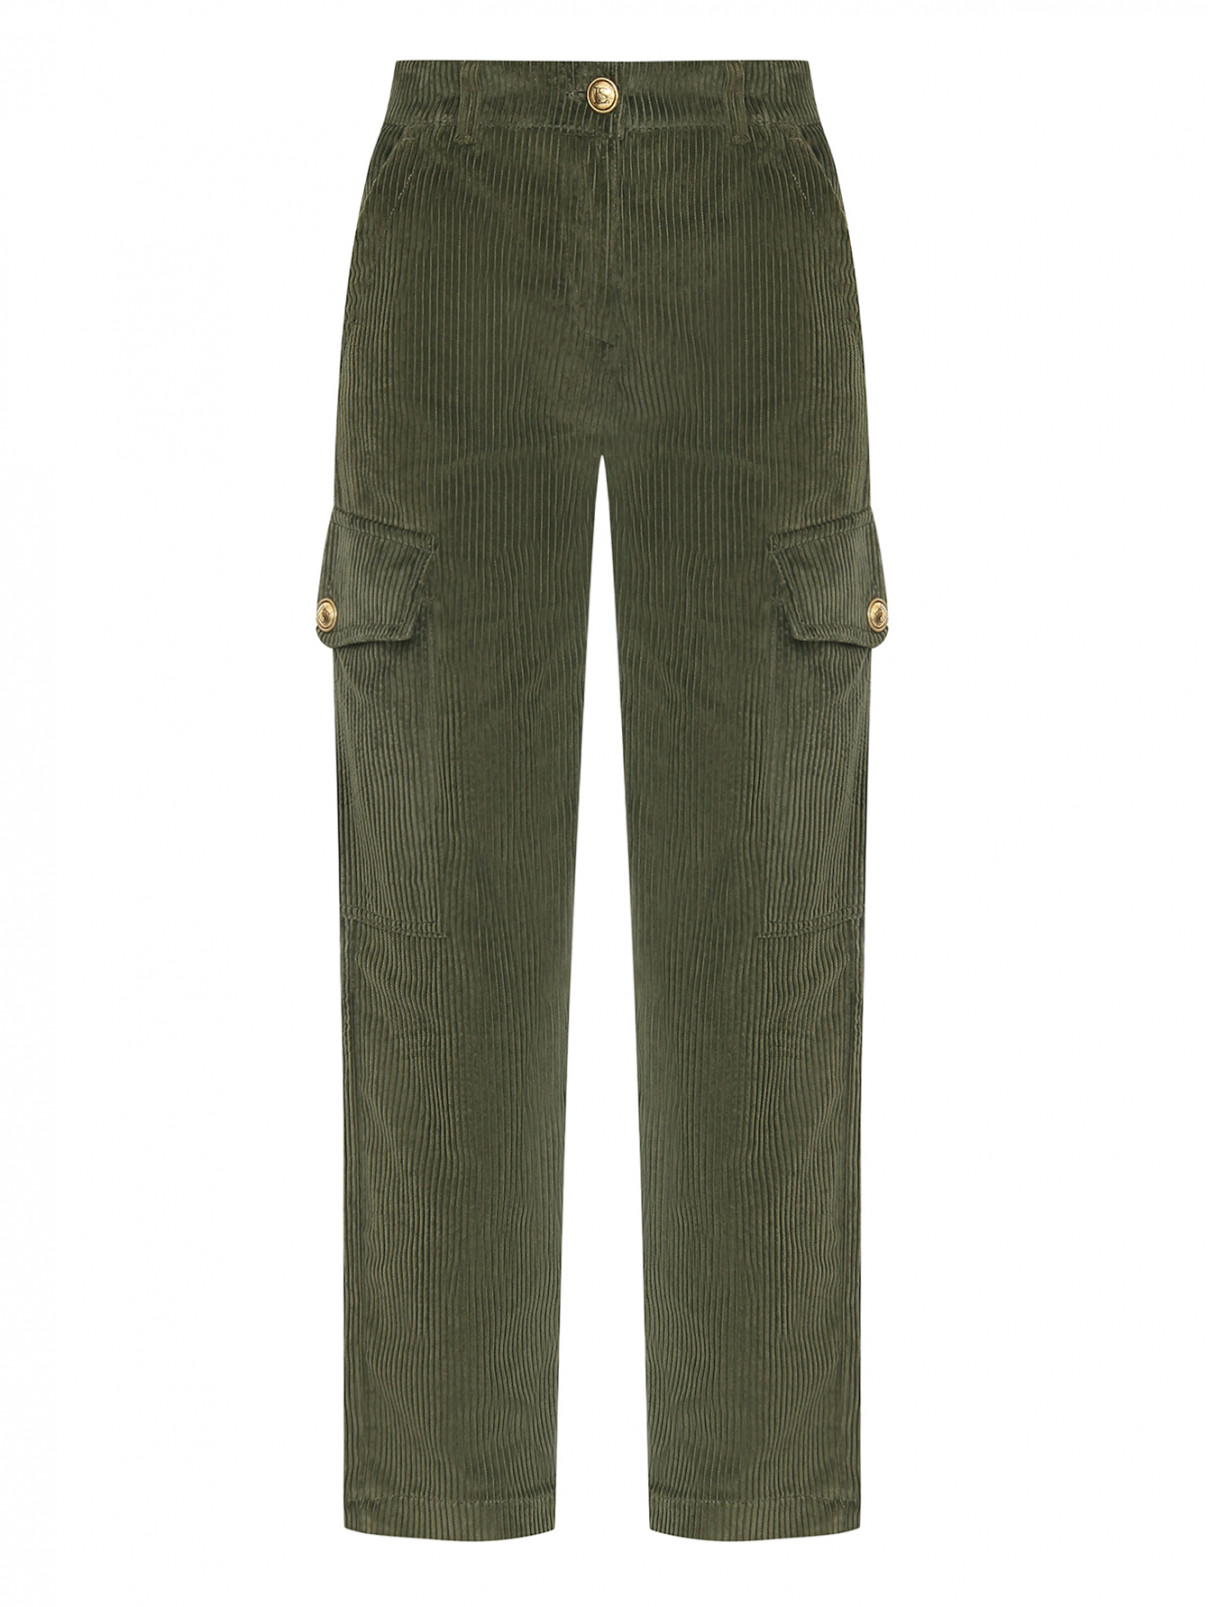 Хлопковые брюки с карманами и поясом сзади Luisa Spagnoli  –  Общий вид  – Цвет:  Зеленый